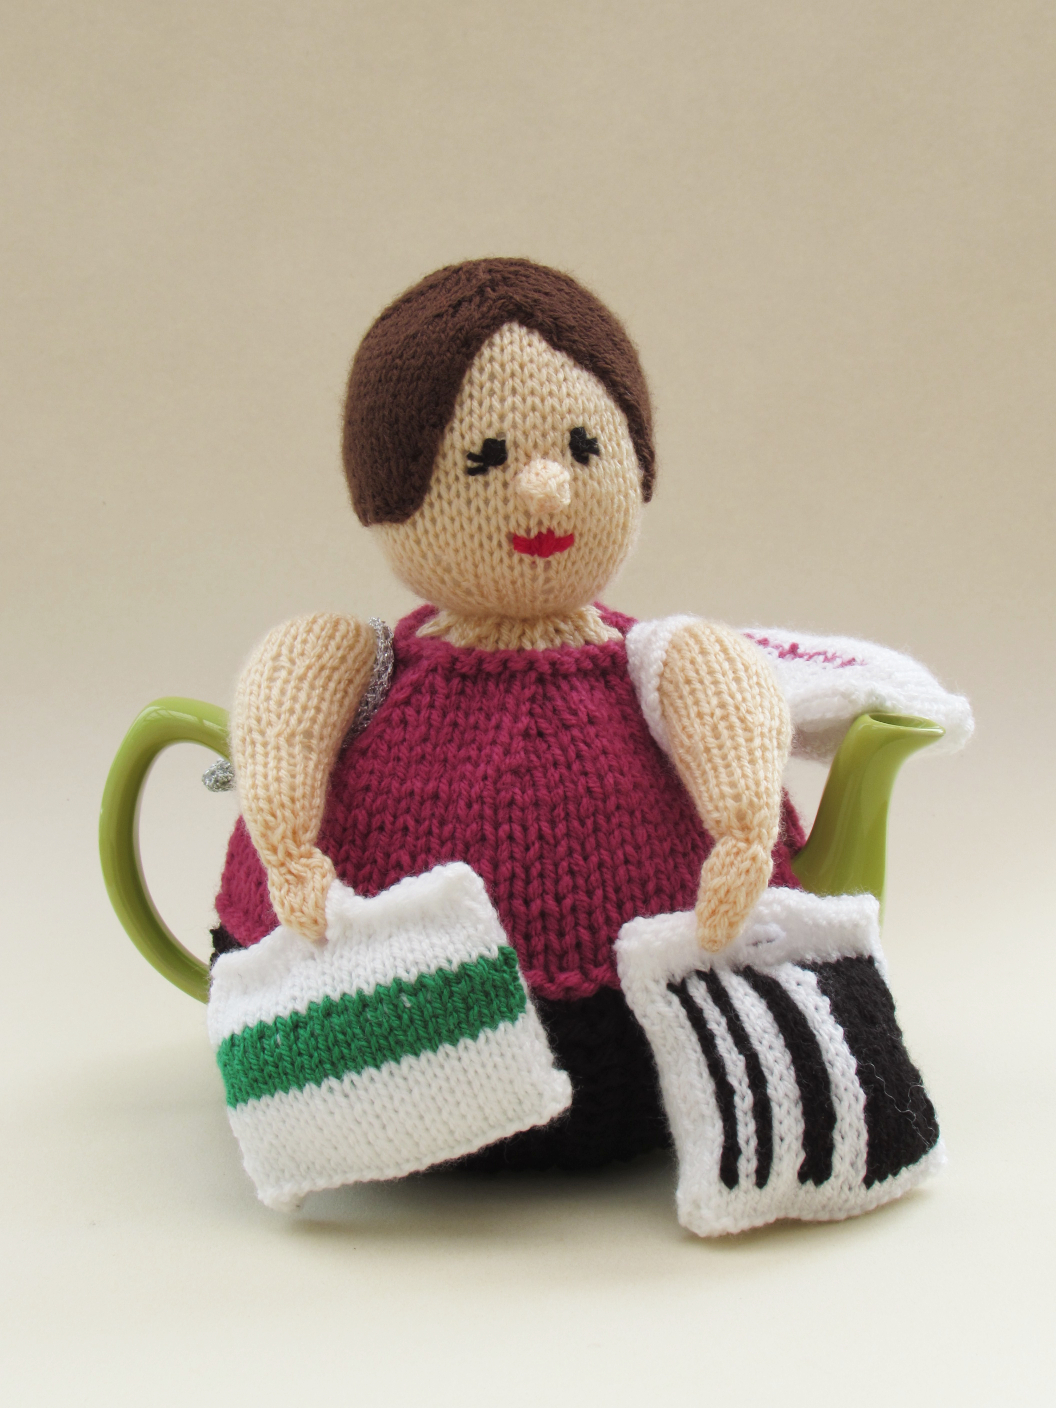 Shopaholic knitting pattern